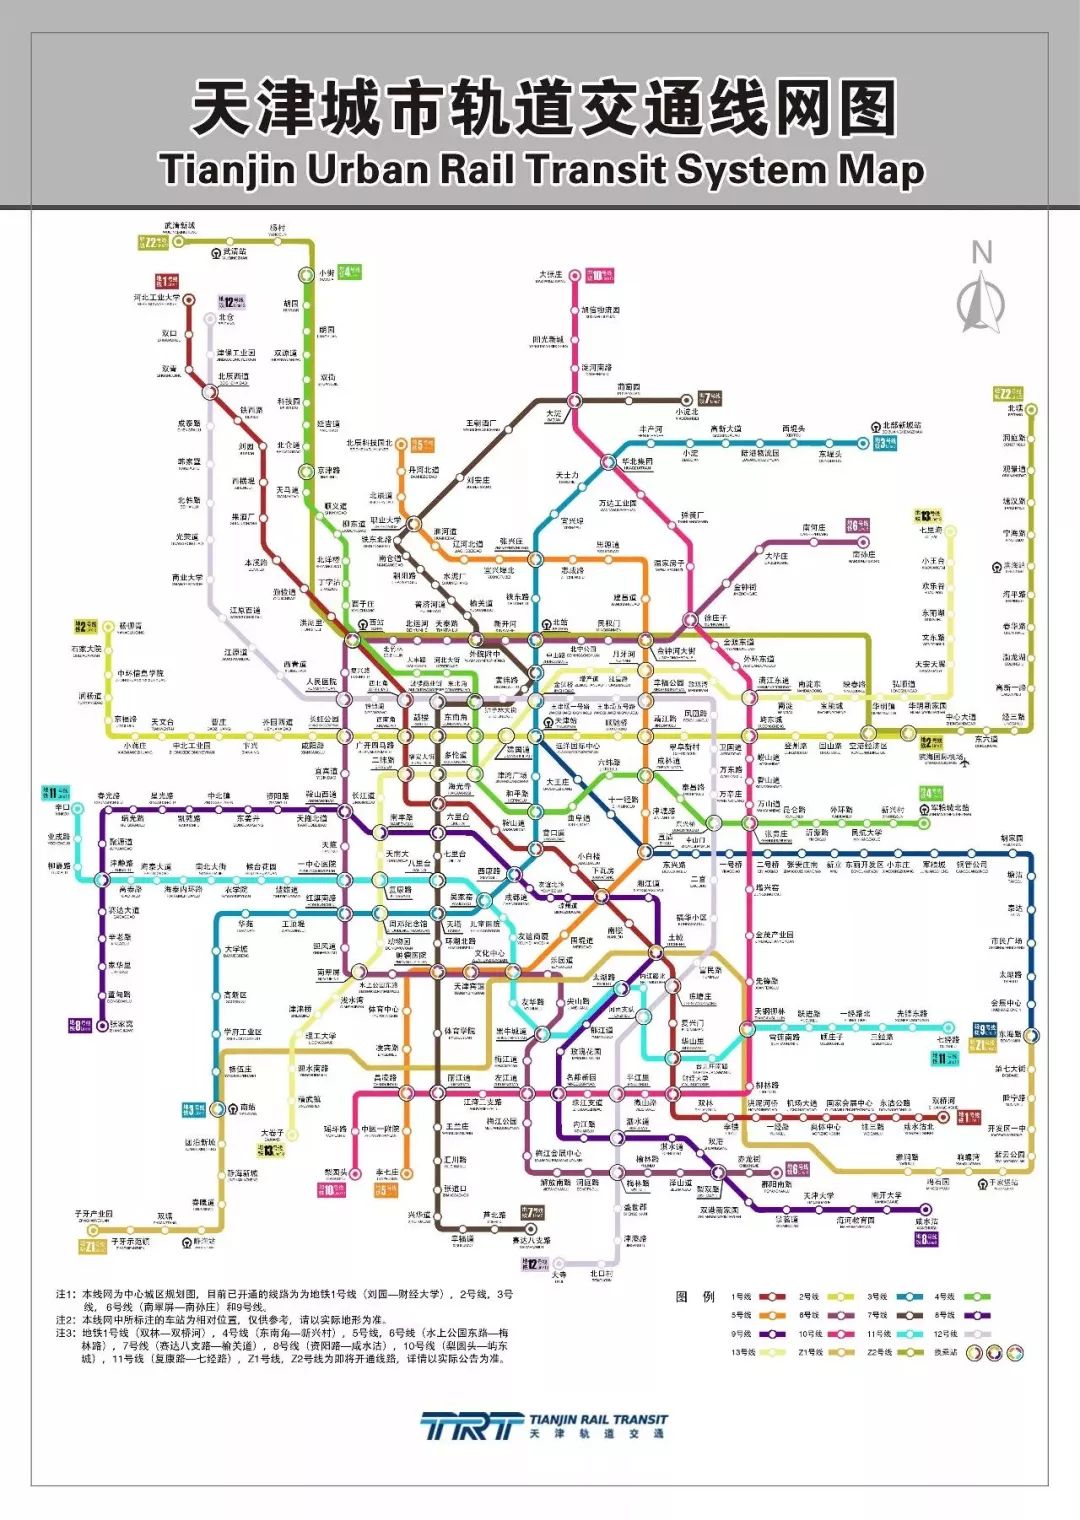 财经 正文  未来的规划让人更是拍手叫好 未来地铁规划  未来天津市